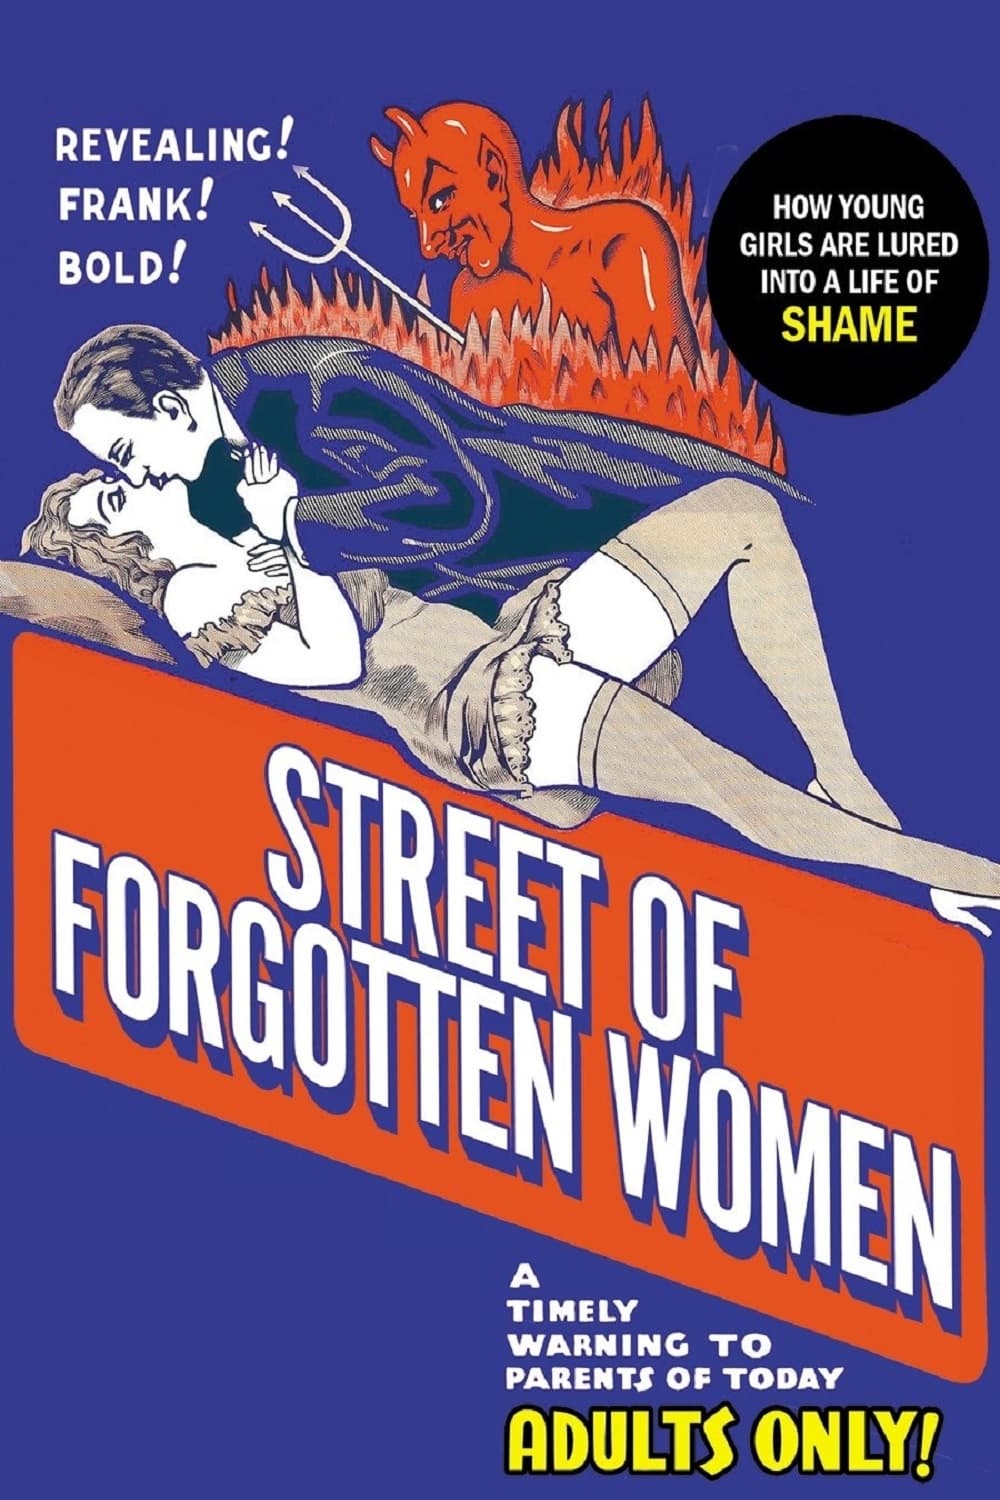 Street of Forgotten Women (1927)